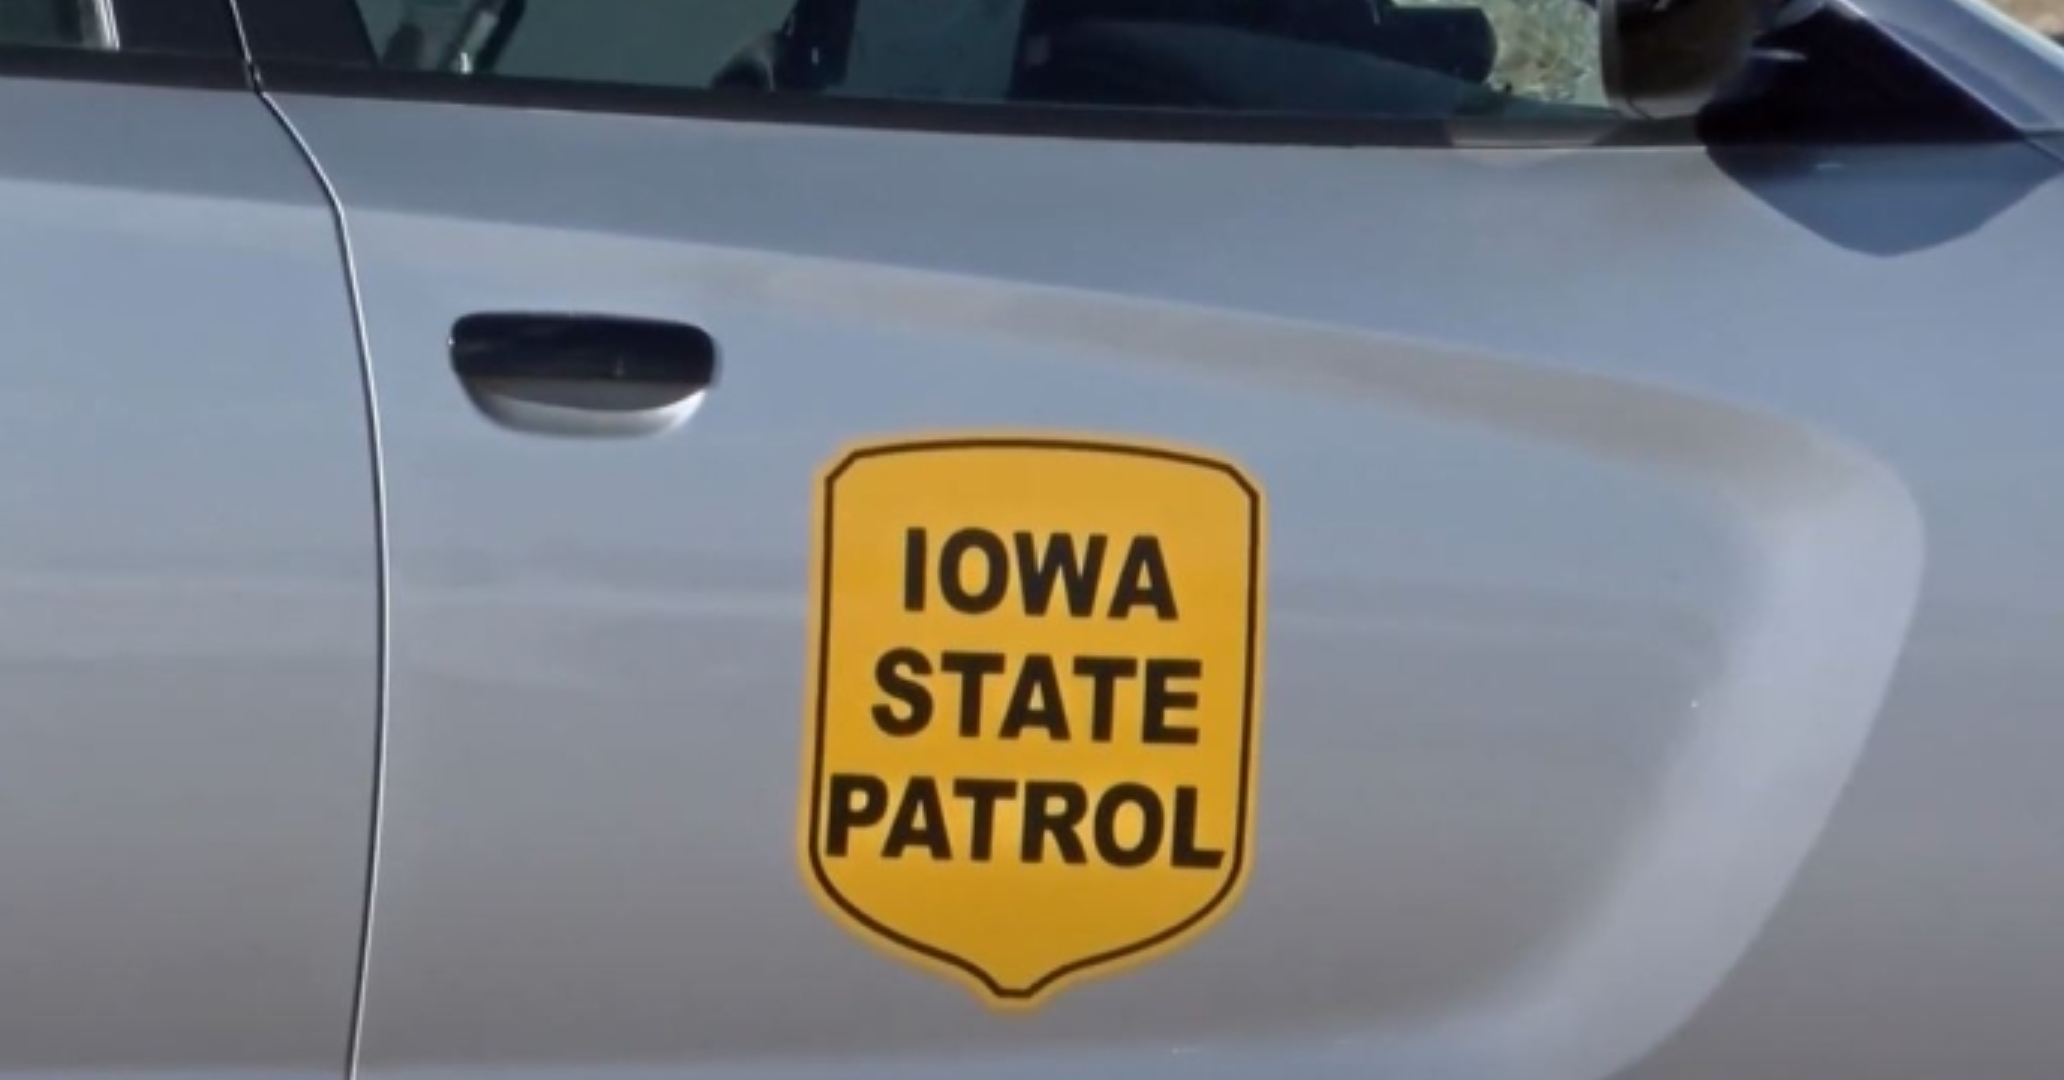 Muere una persona en accidente automovilístico en Iowa e incendio.